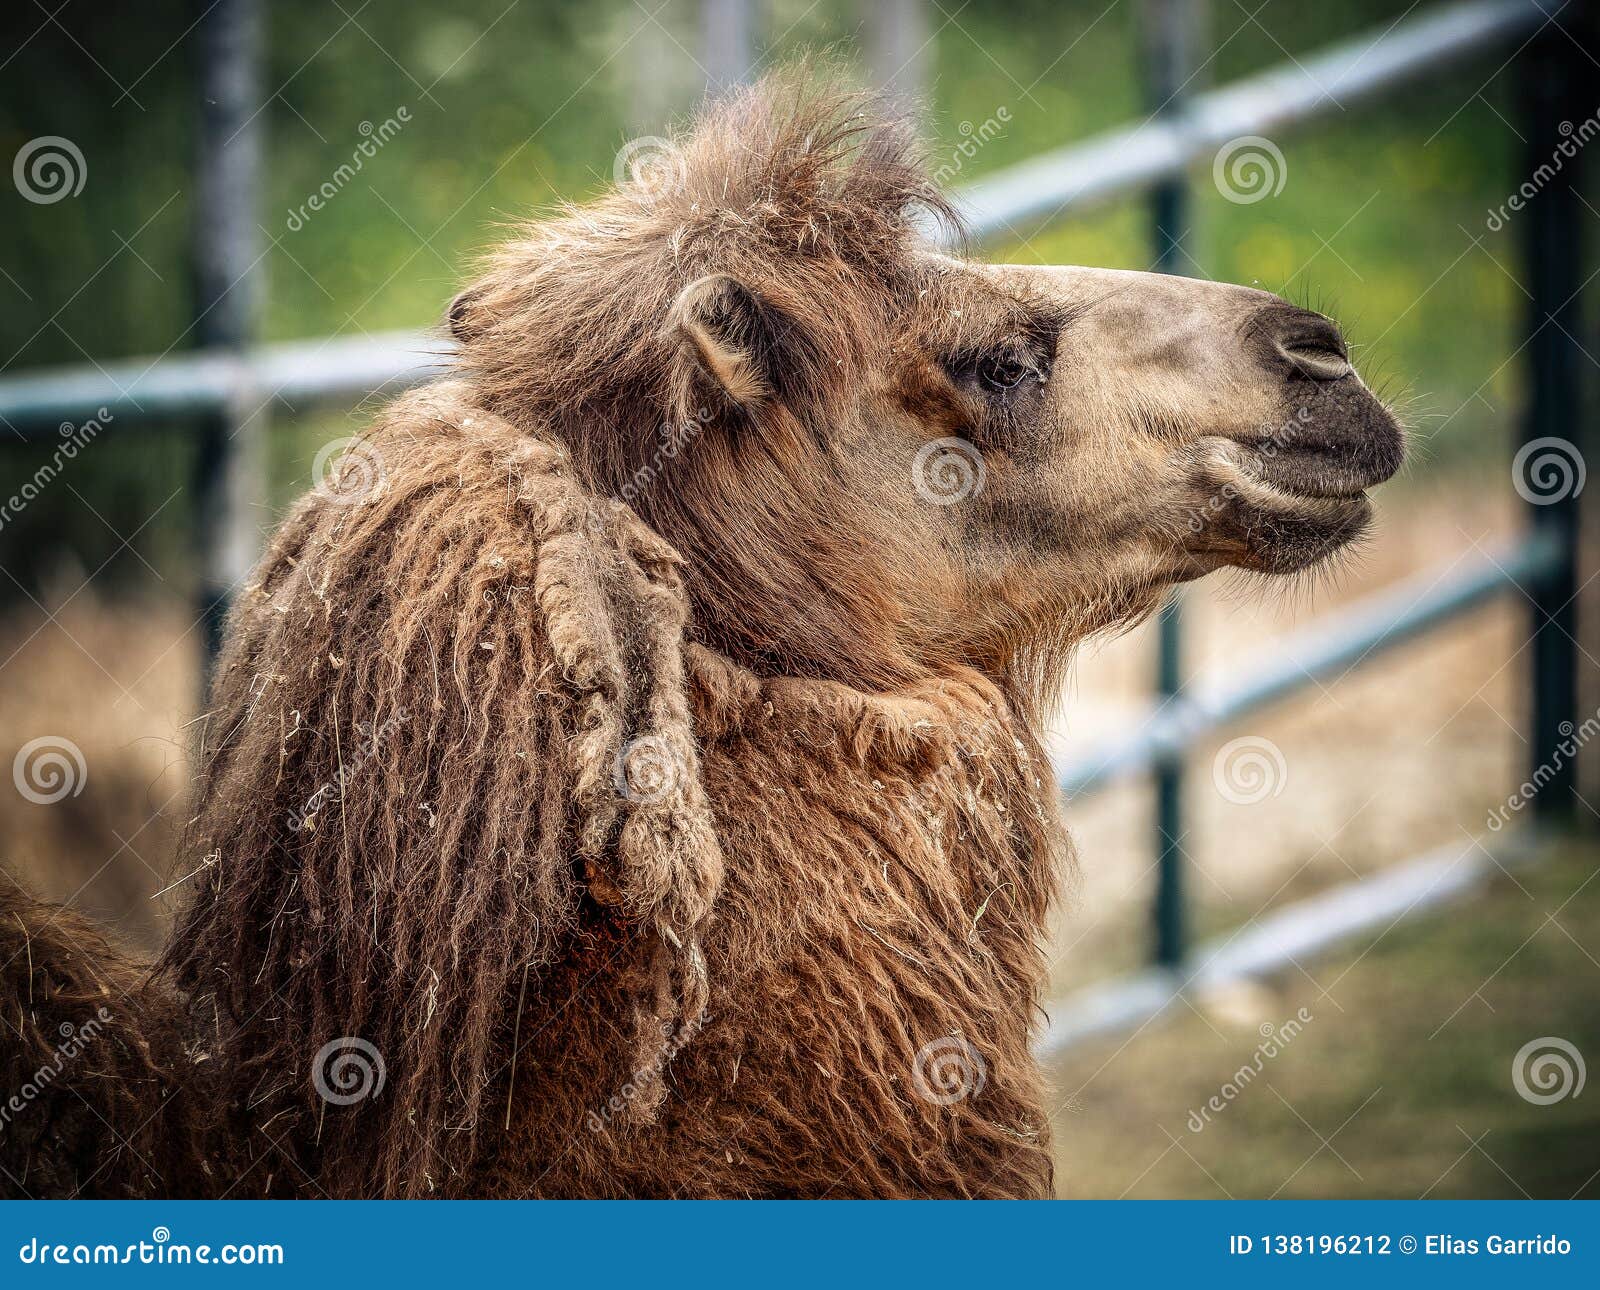 Camels and dromedaries stock photo. Image of mammal - 138196212